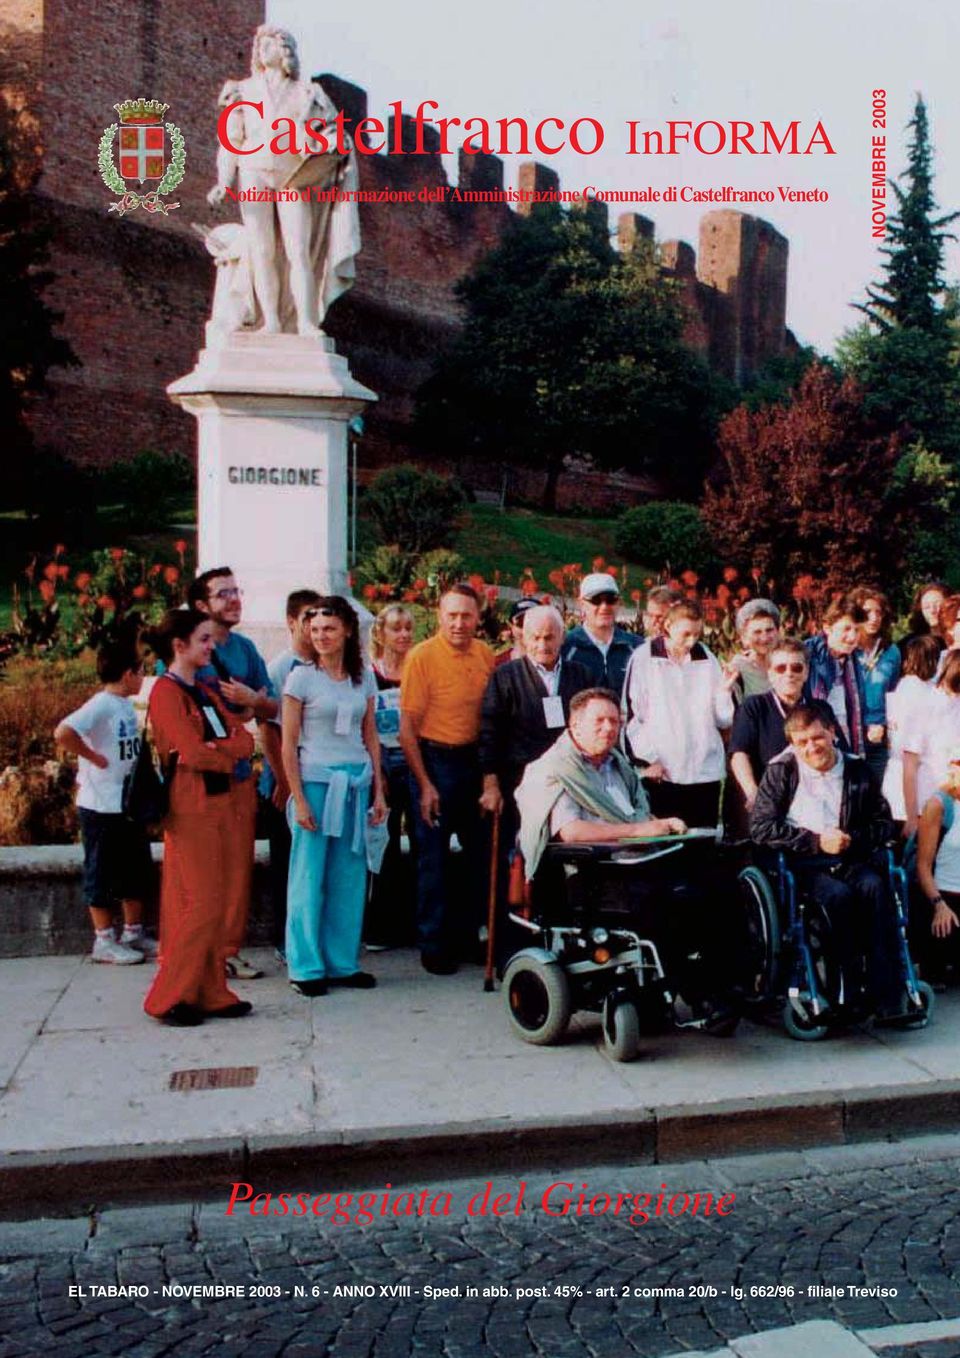 Passeggiata del Giorgione EL TABARO - NOVEMBRE 2003 - N.